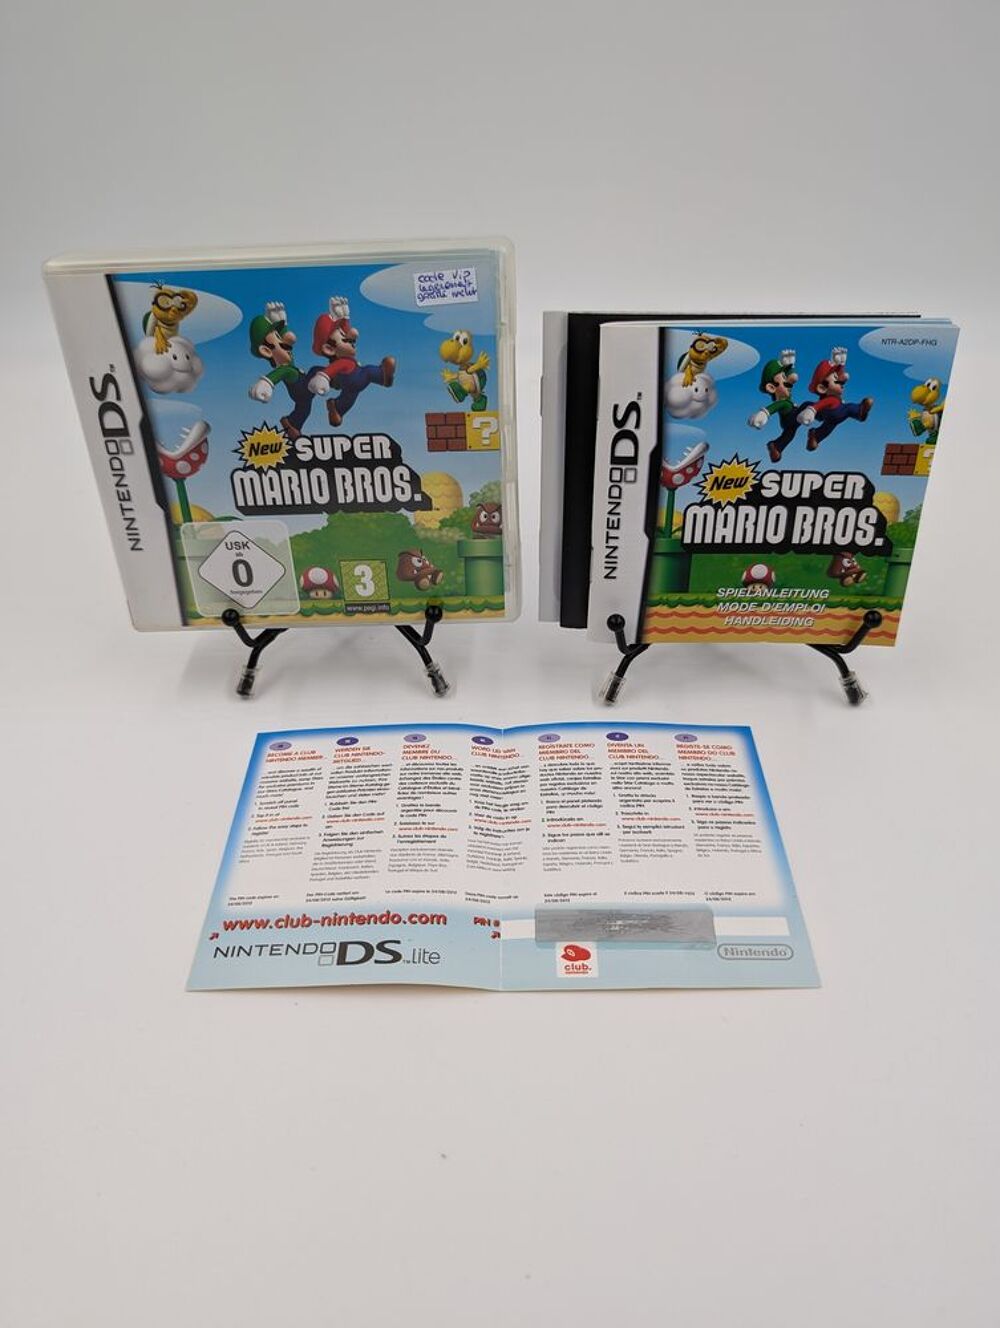 Jeu Nintendo DS New Super Mario Bros. boite complet + VIP OK Consoles et jeux vidos